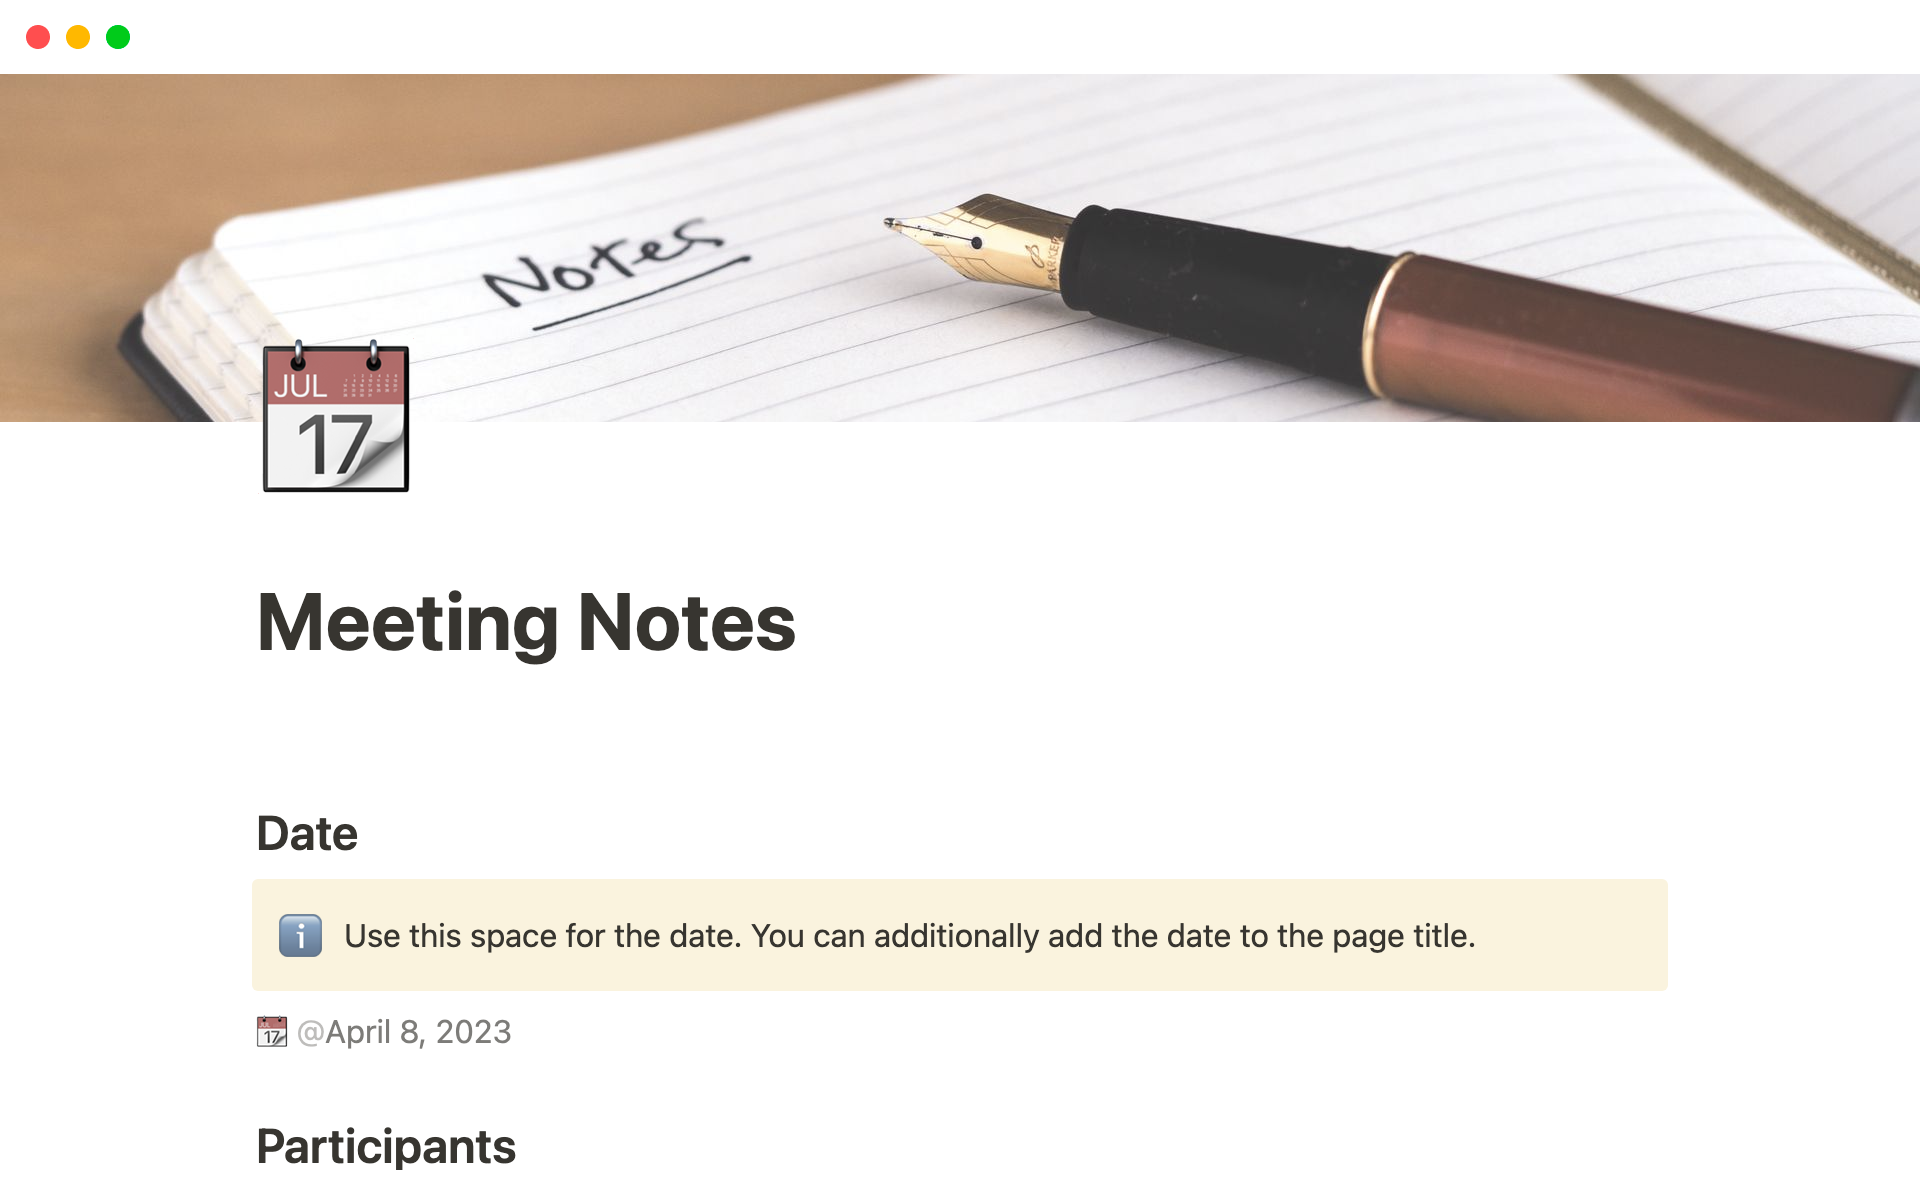 Aperçu du modèle de Meeting Notes